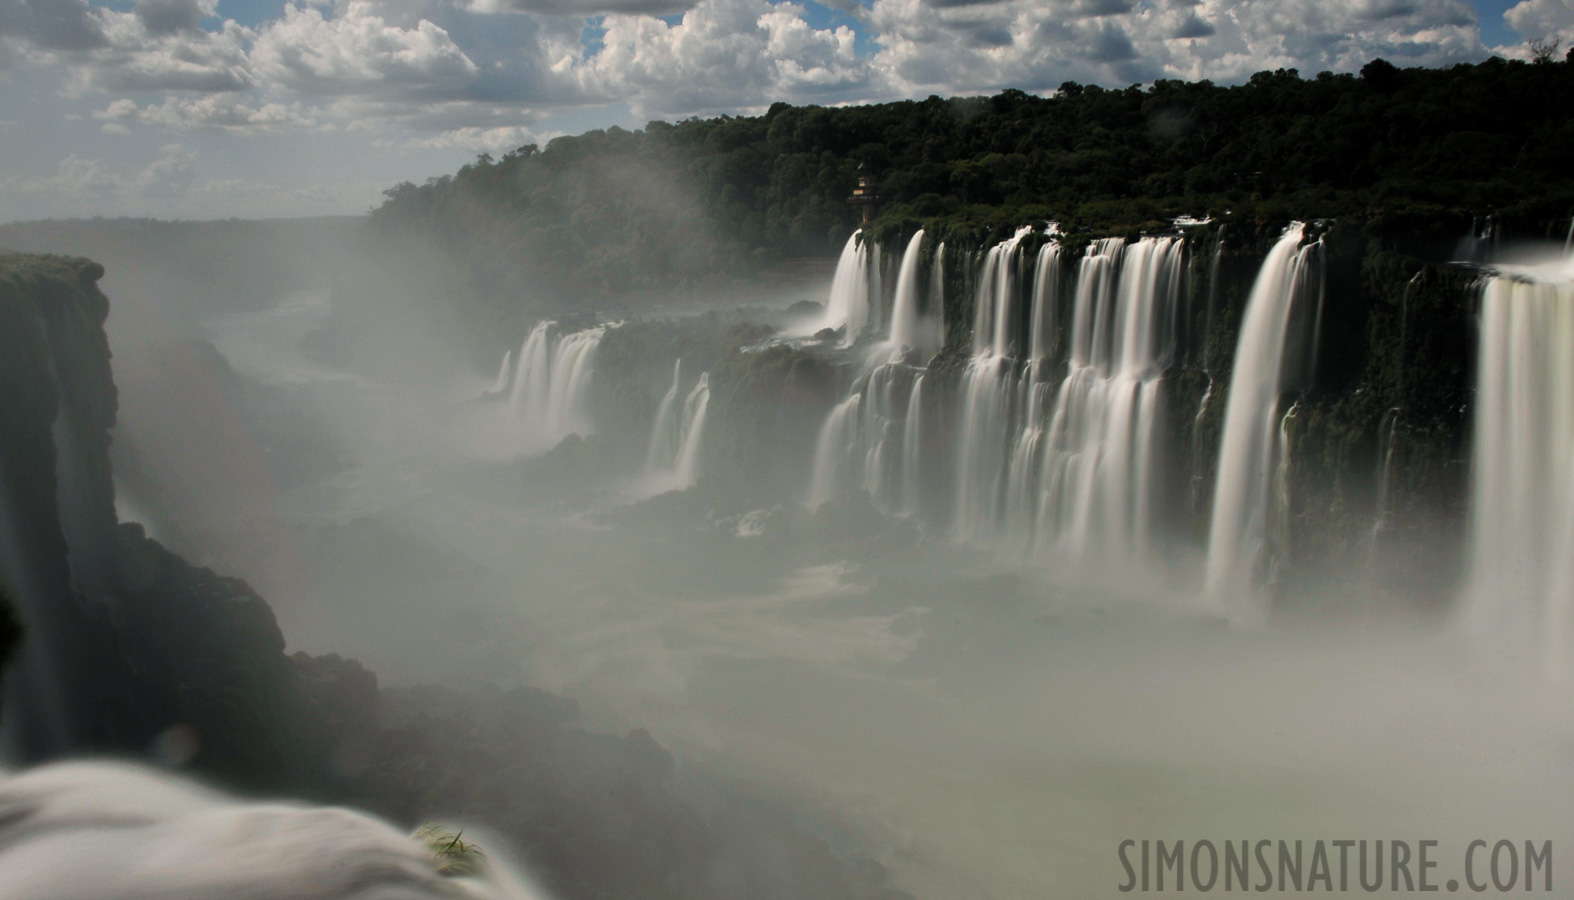 Cataratas del Iguazu [28 mm, 4.0 Sek. bei f / 22, ISO 200]